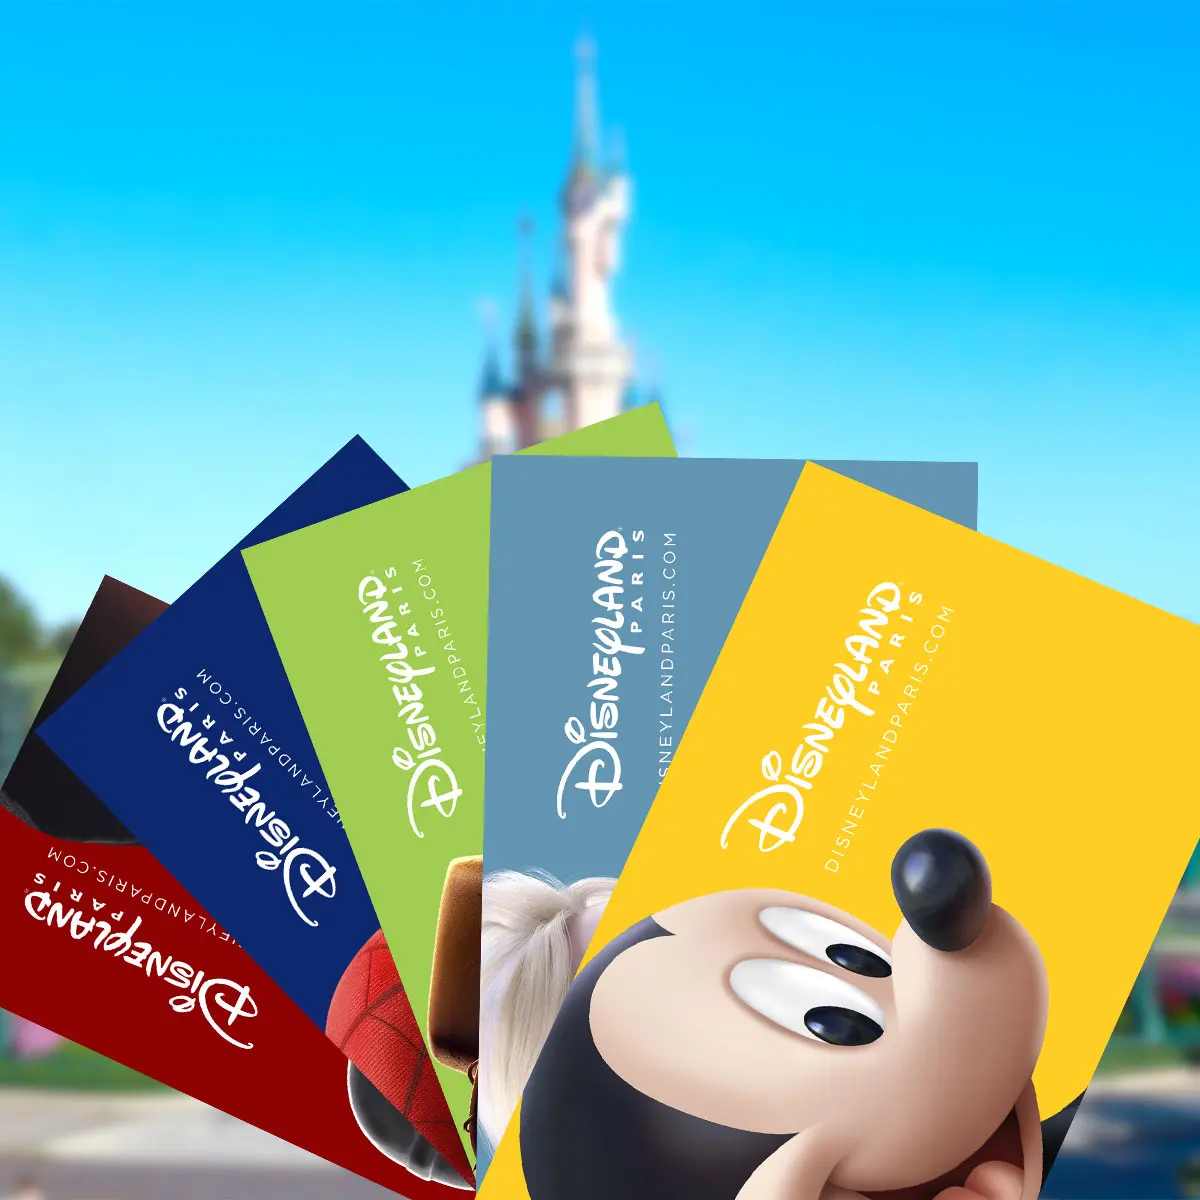 Disneyland Paris: Same-Day Entry Ticket